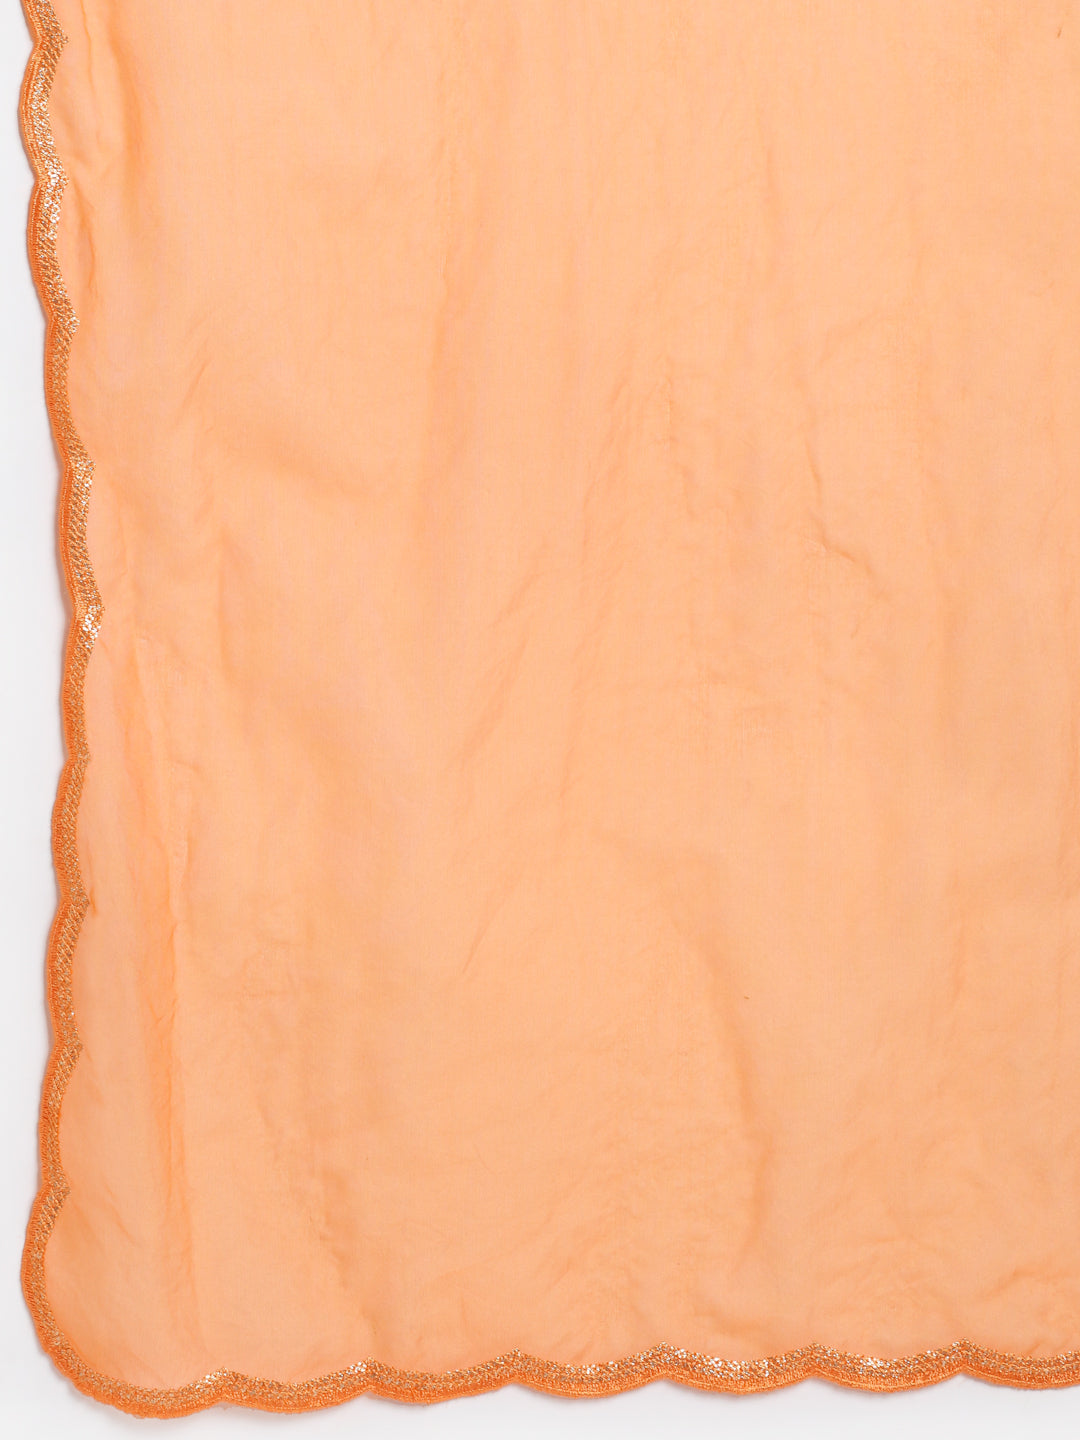 Women's Shining Orange Festive A-Line Kurti With Straight Pants And Scalloped Organza Dupatta - Anokherang